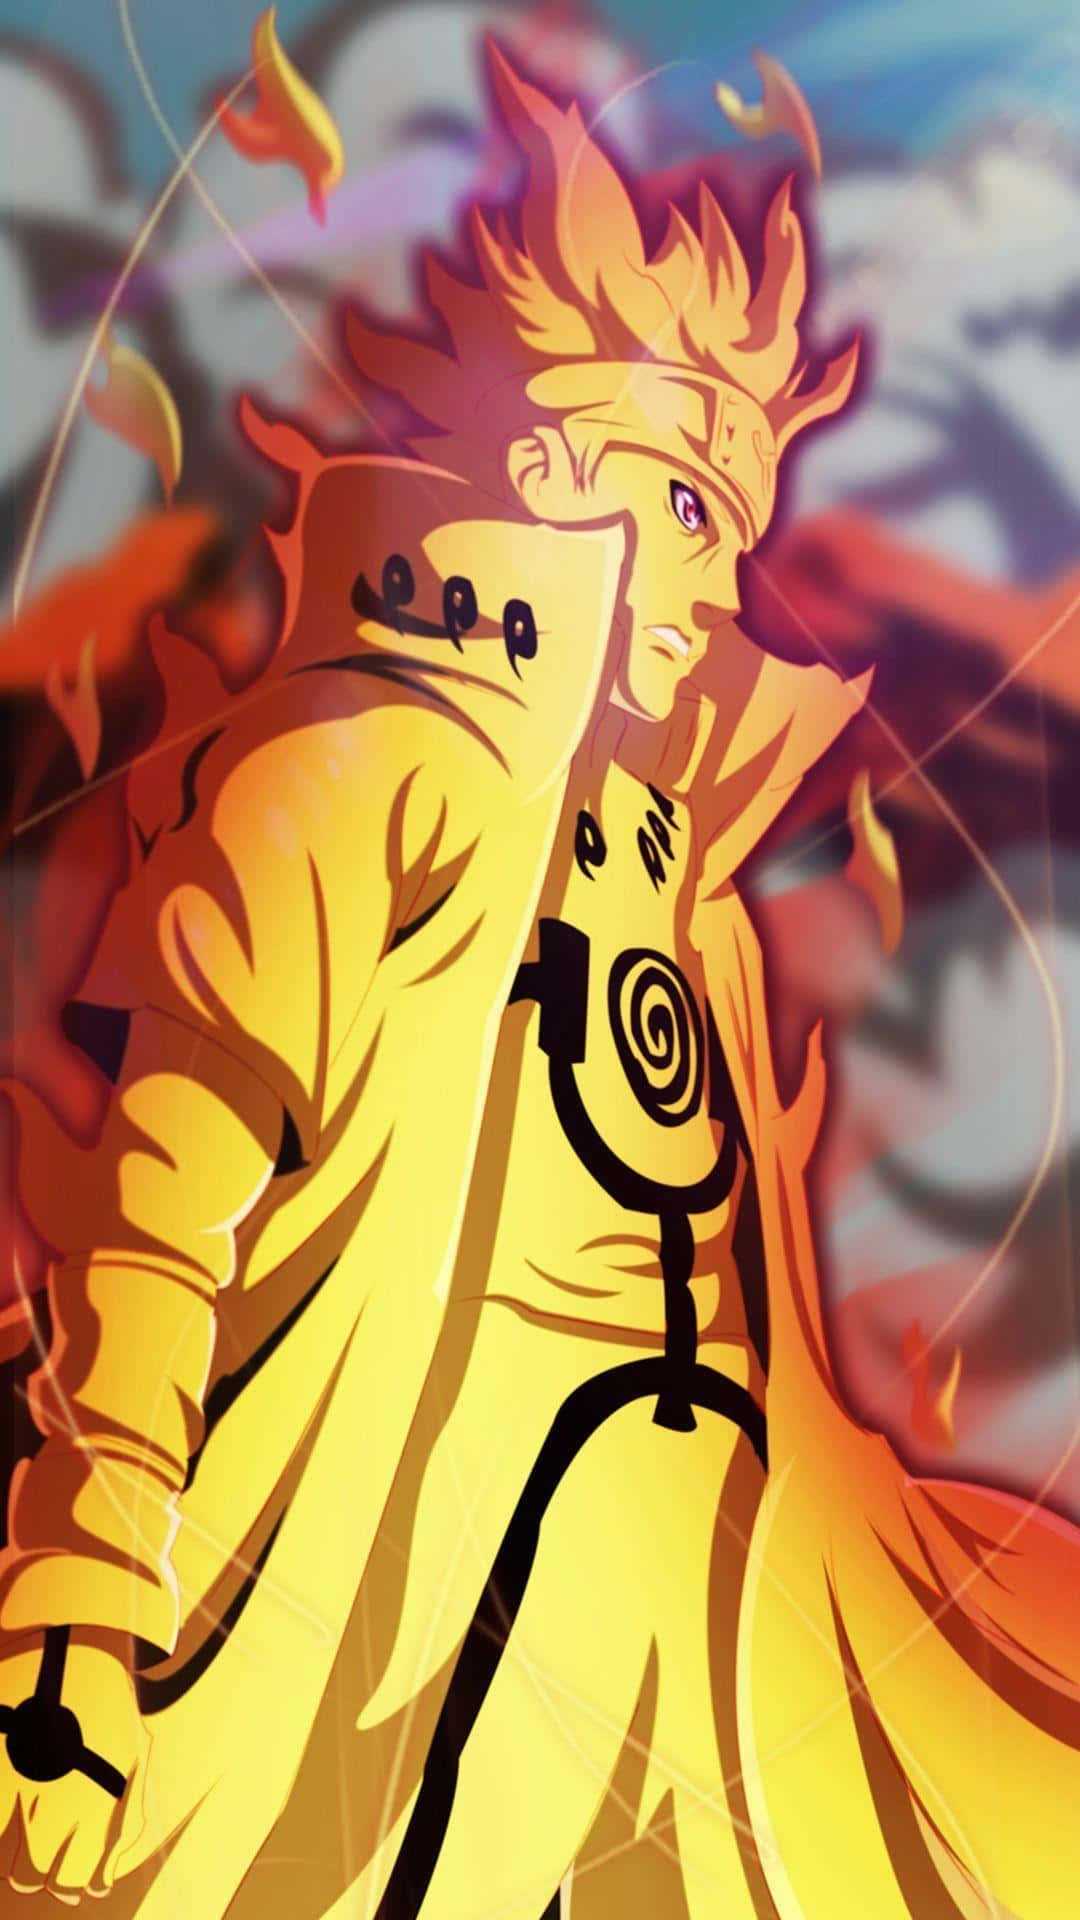 Epic Naruto Uzumaki Battle Scene on Phone Background